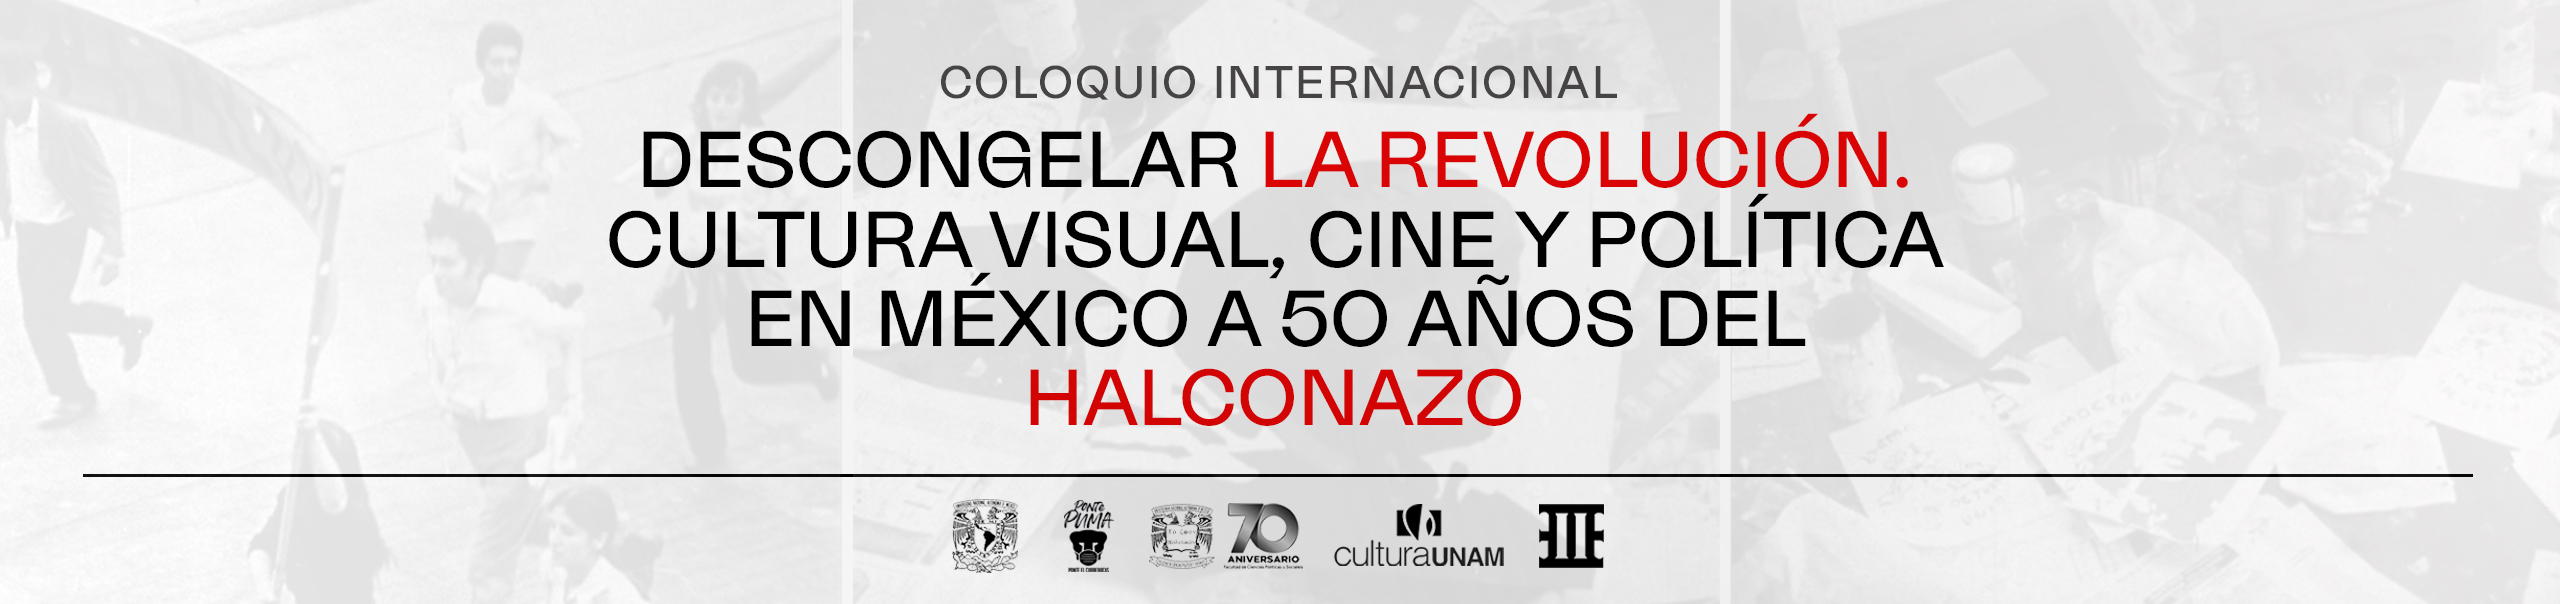 Coloquio Internacional Descongelar la revolución. Cultura visual, cine y política en México a 50 años del Halconazo